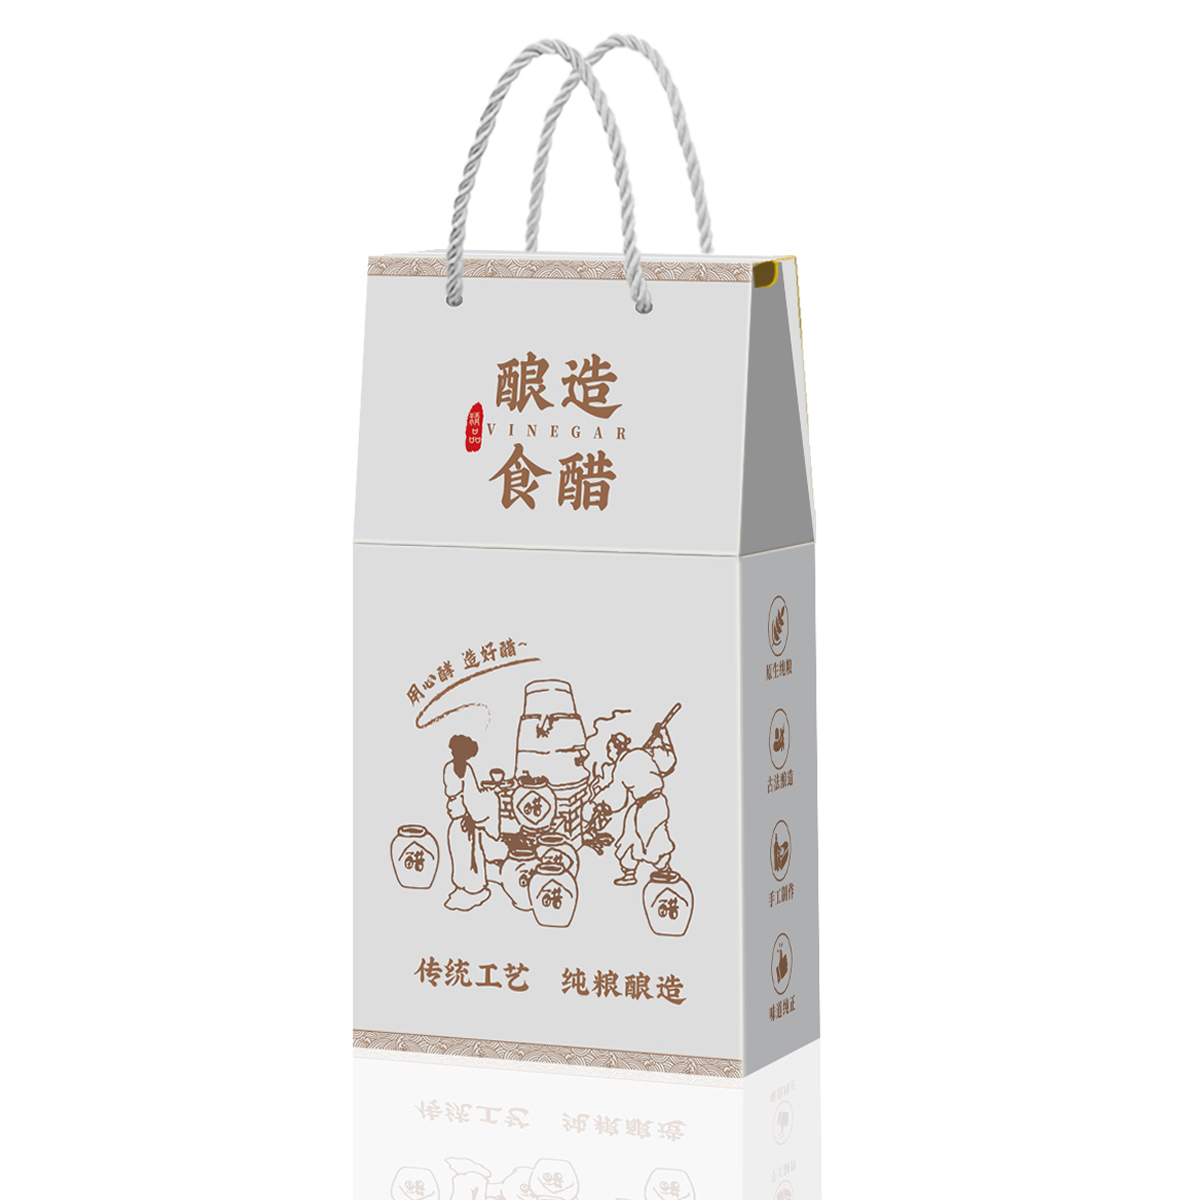 食醋包装盒老陈米香白醋礼品盒外包装纸箱彩盒手提袋现货批发订制